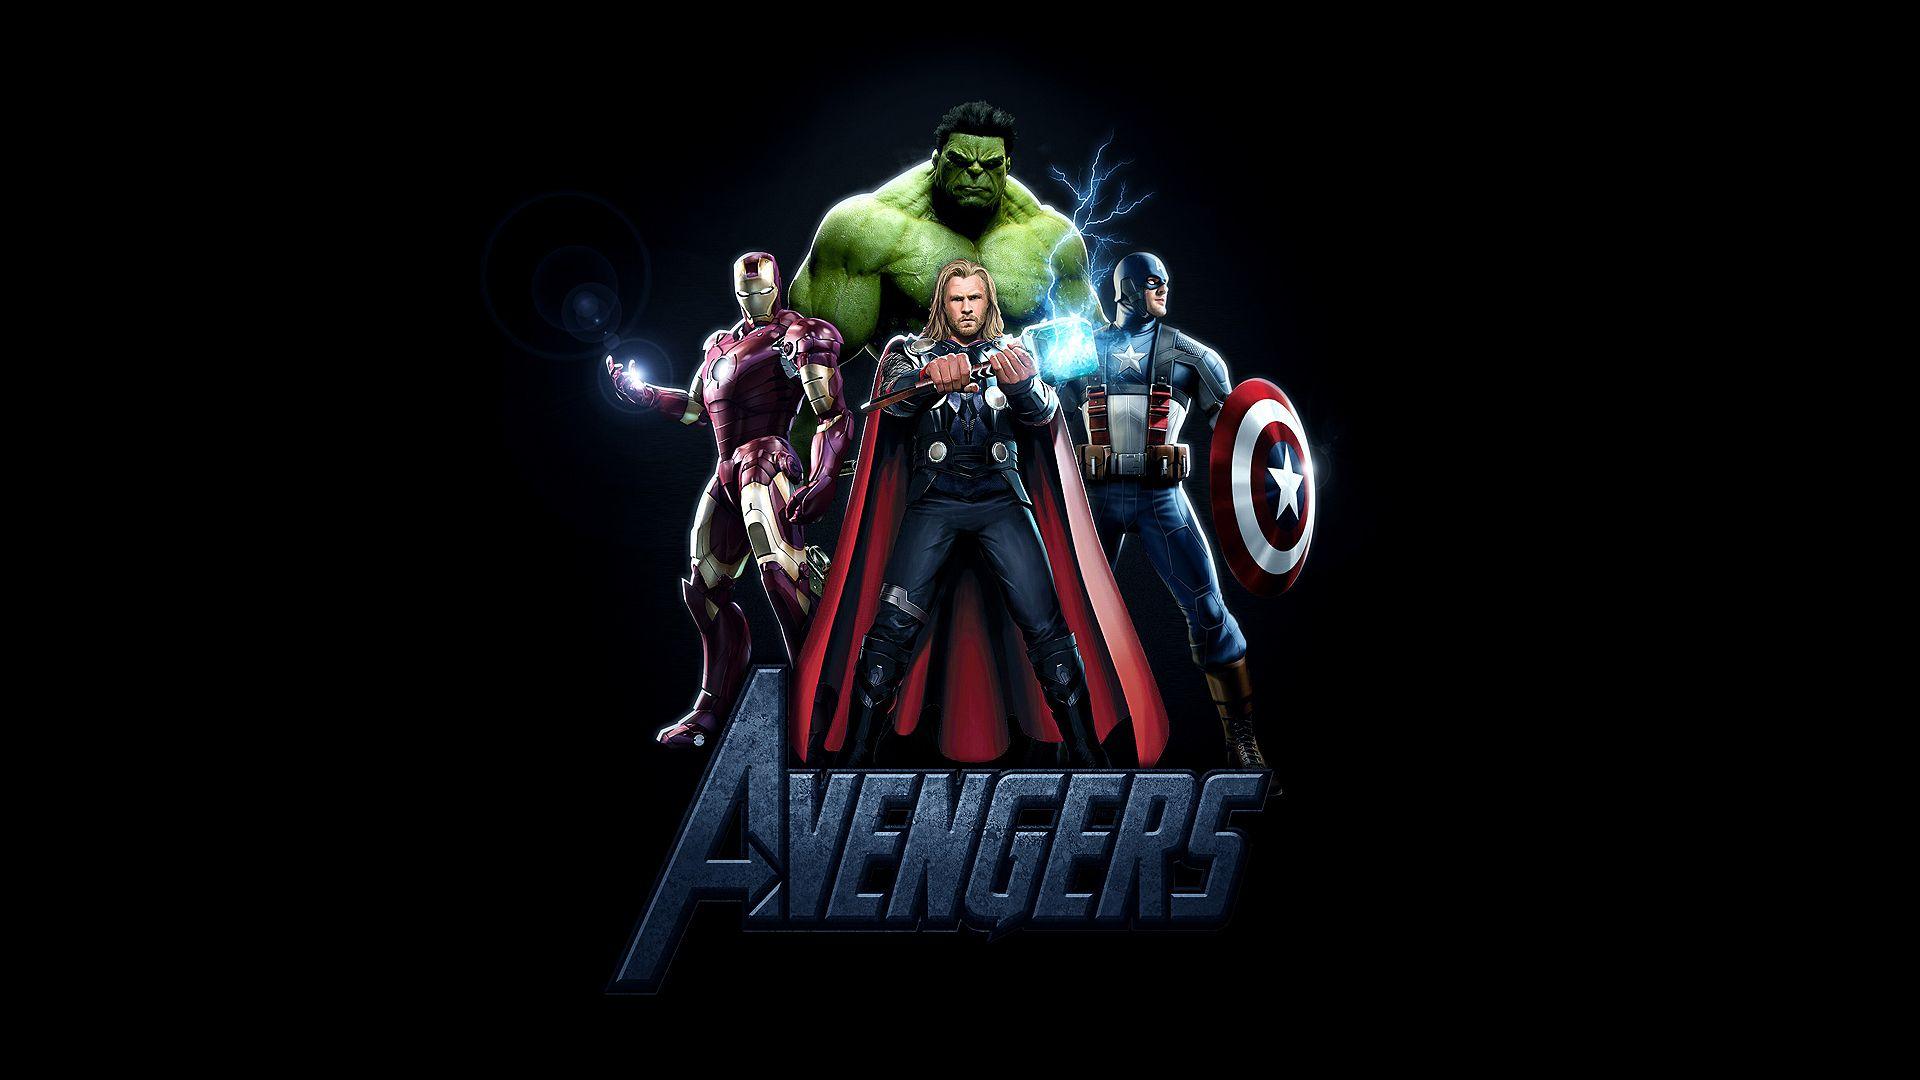 The Avengers Assemble Avengers Wallpaper 21474271